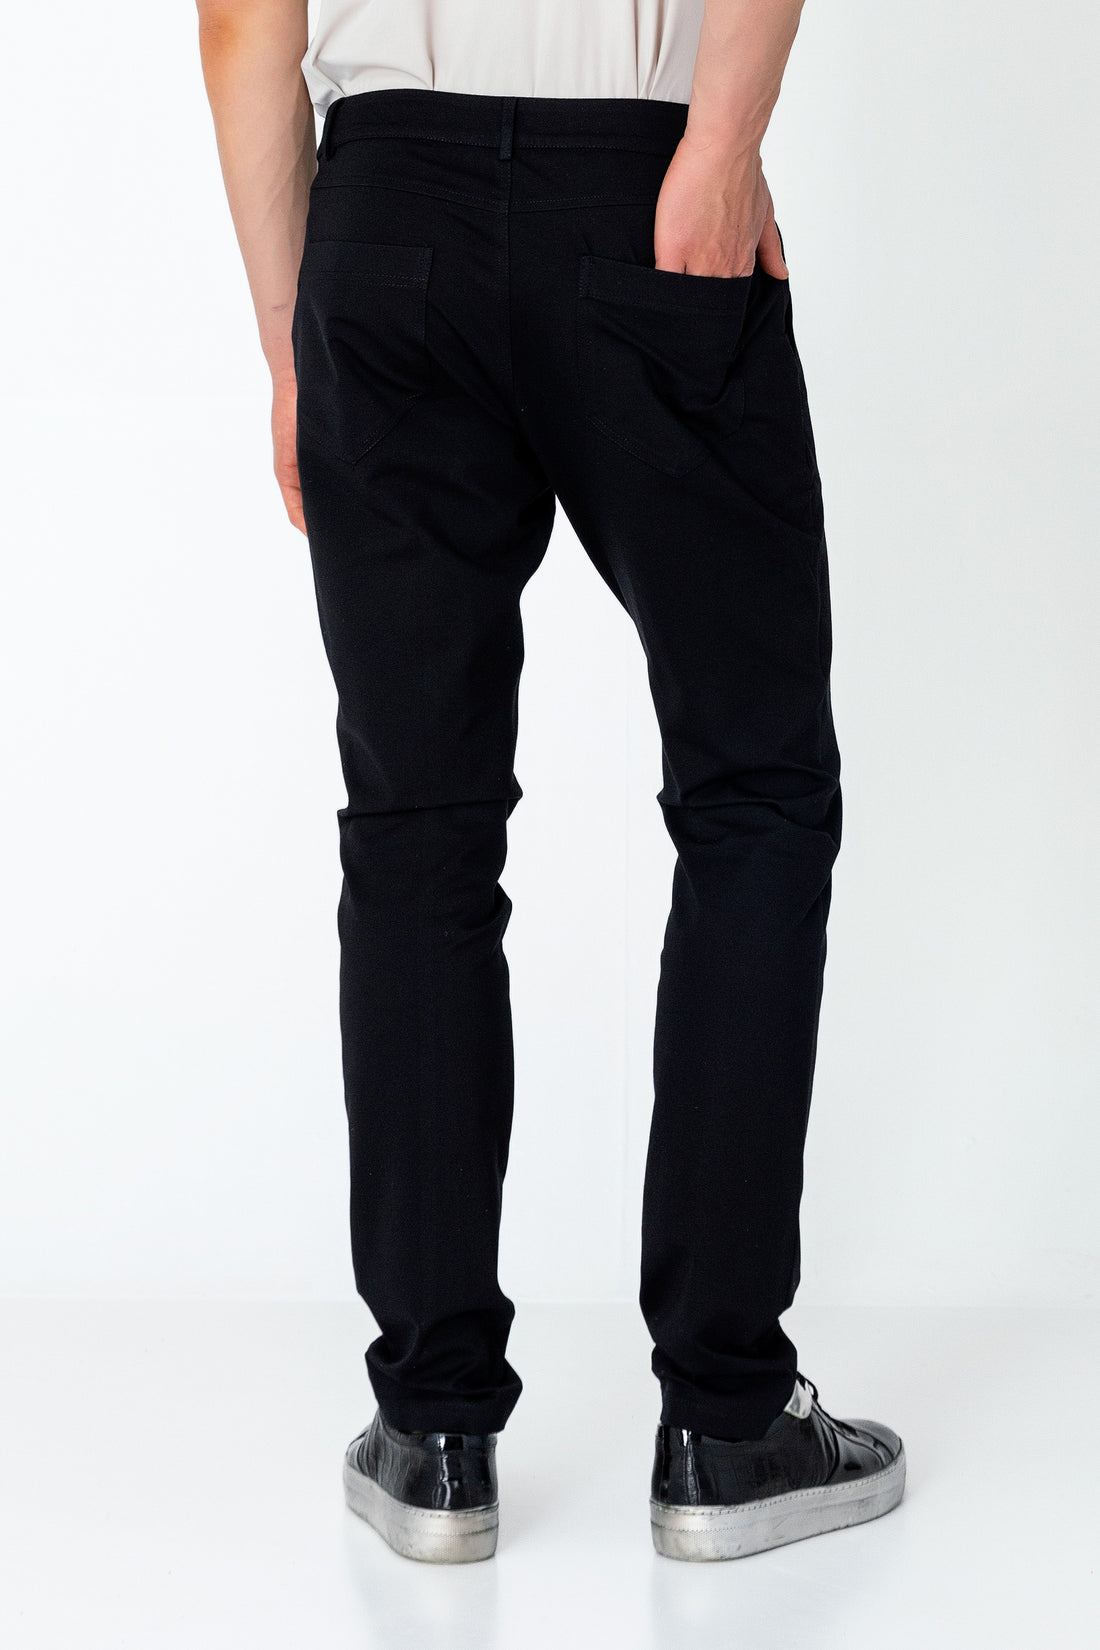 Casual Wear Pants - Black